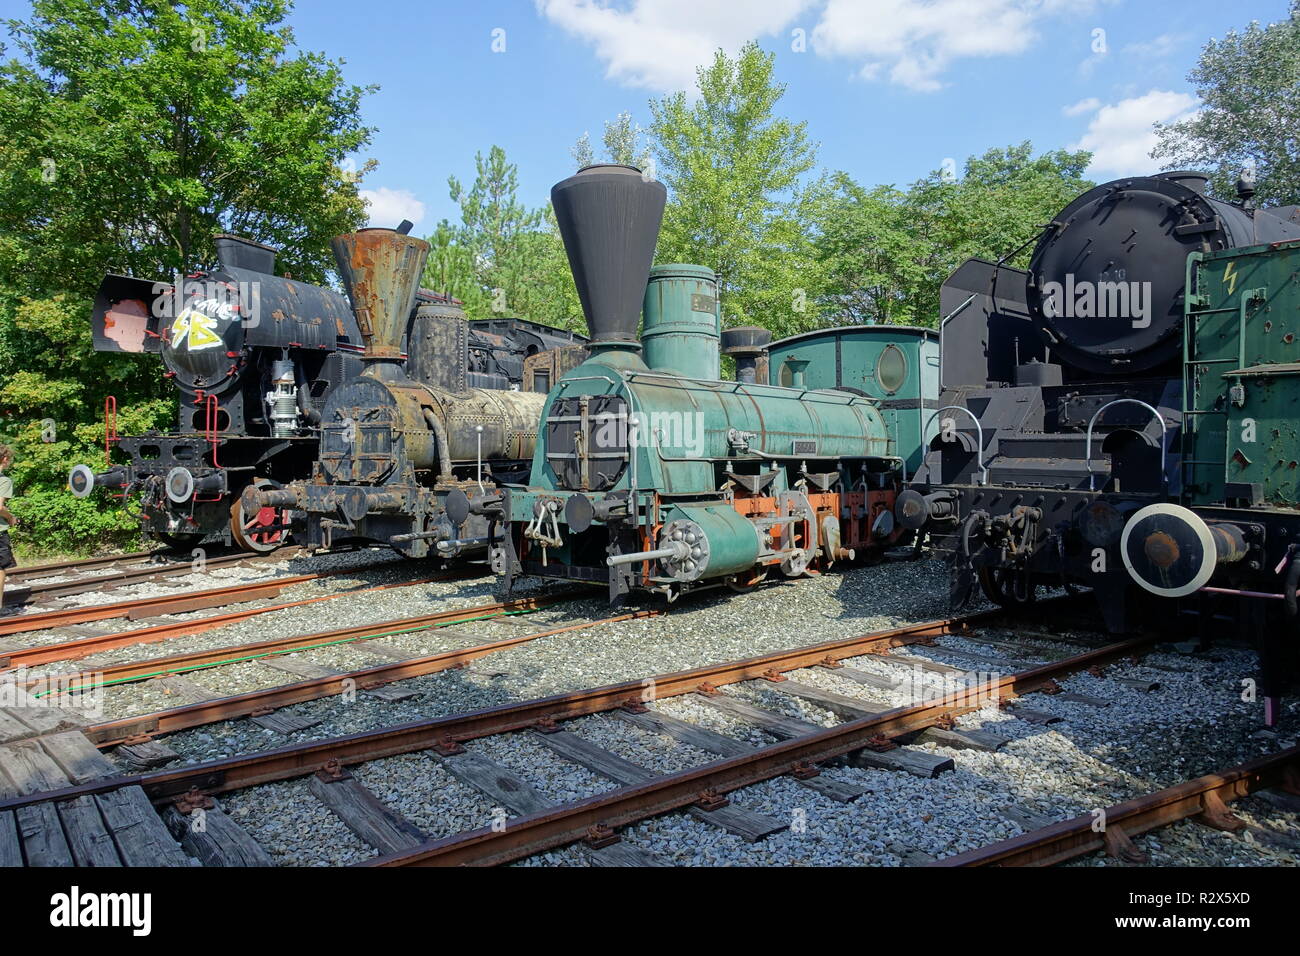 Alte, historische Dampflokomotiven im Eisenbahnmuseum Strasshof, Österreich - Vintage Steam Locos at the Railway Museum Strasshof in Austria Stock Photo